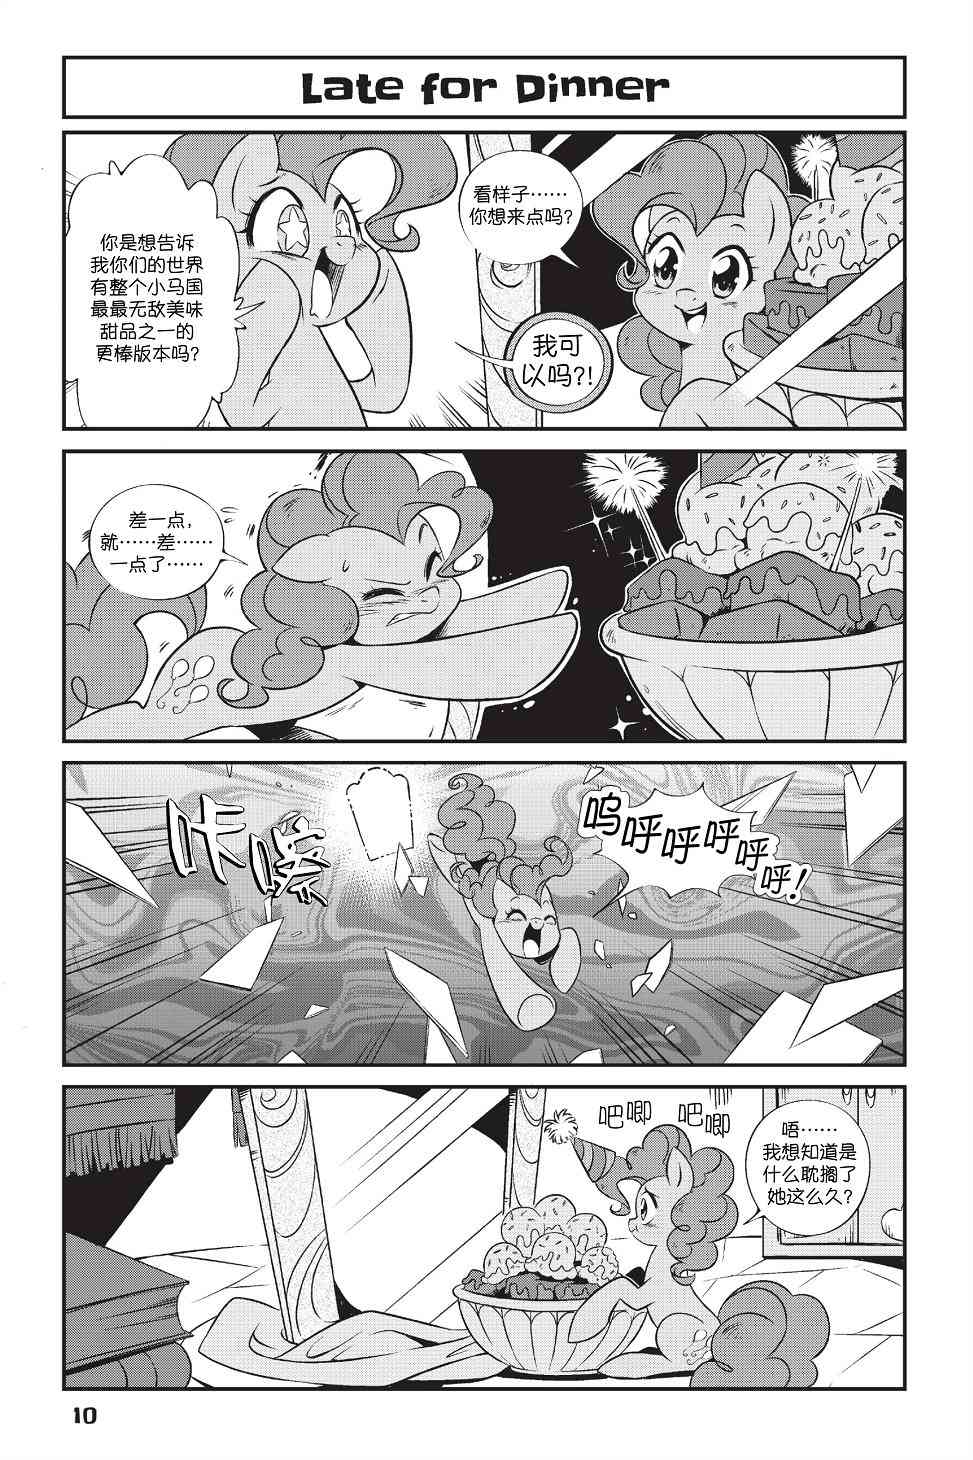 彩虹小馬G4：友情就是魔法 - 新日版漫畫第01部第01話 - 3